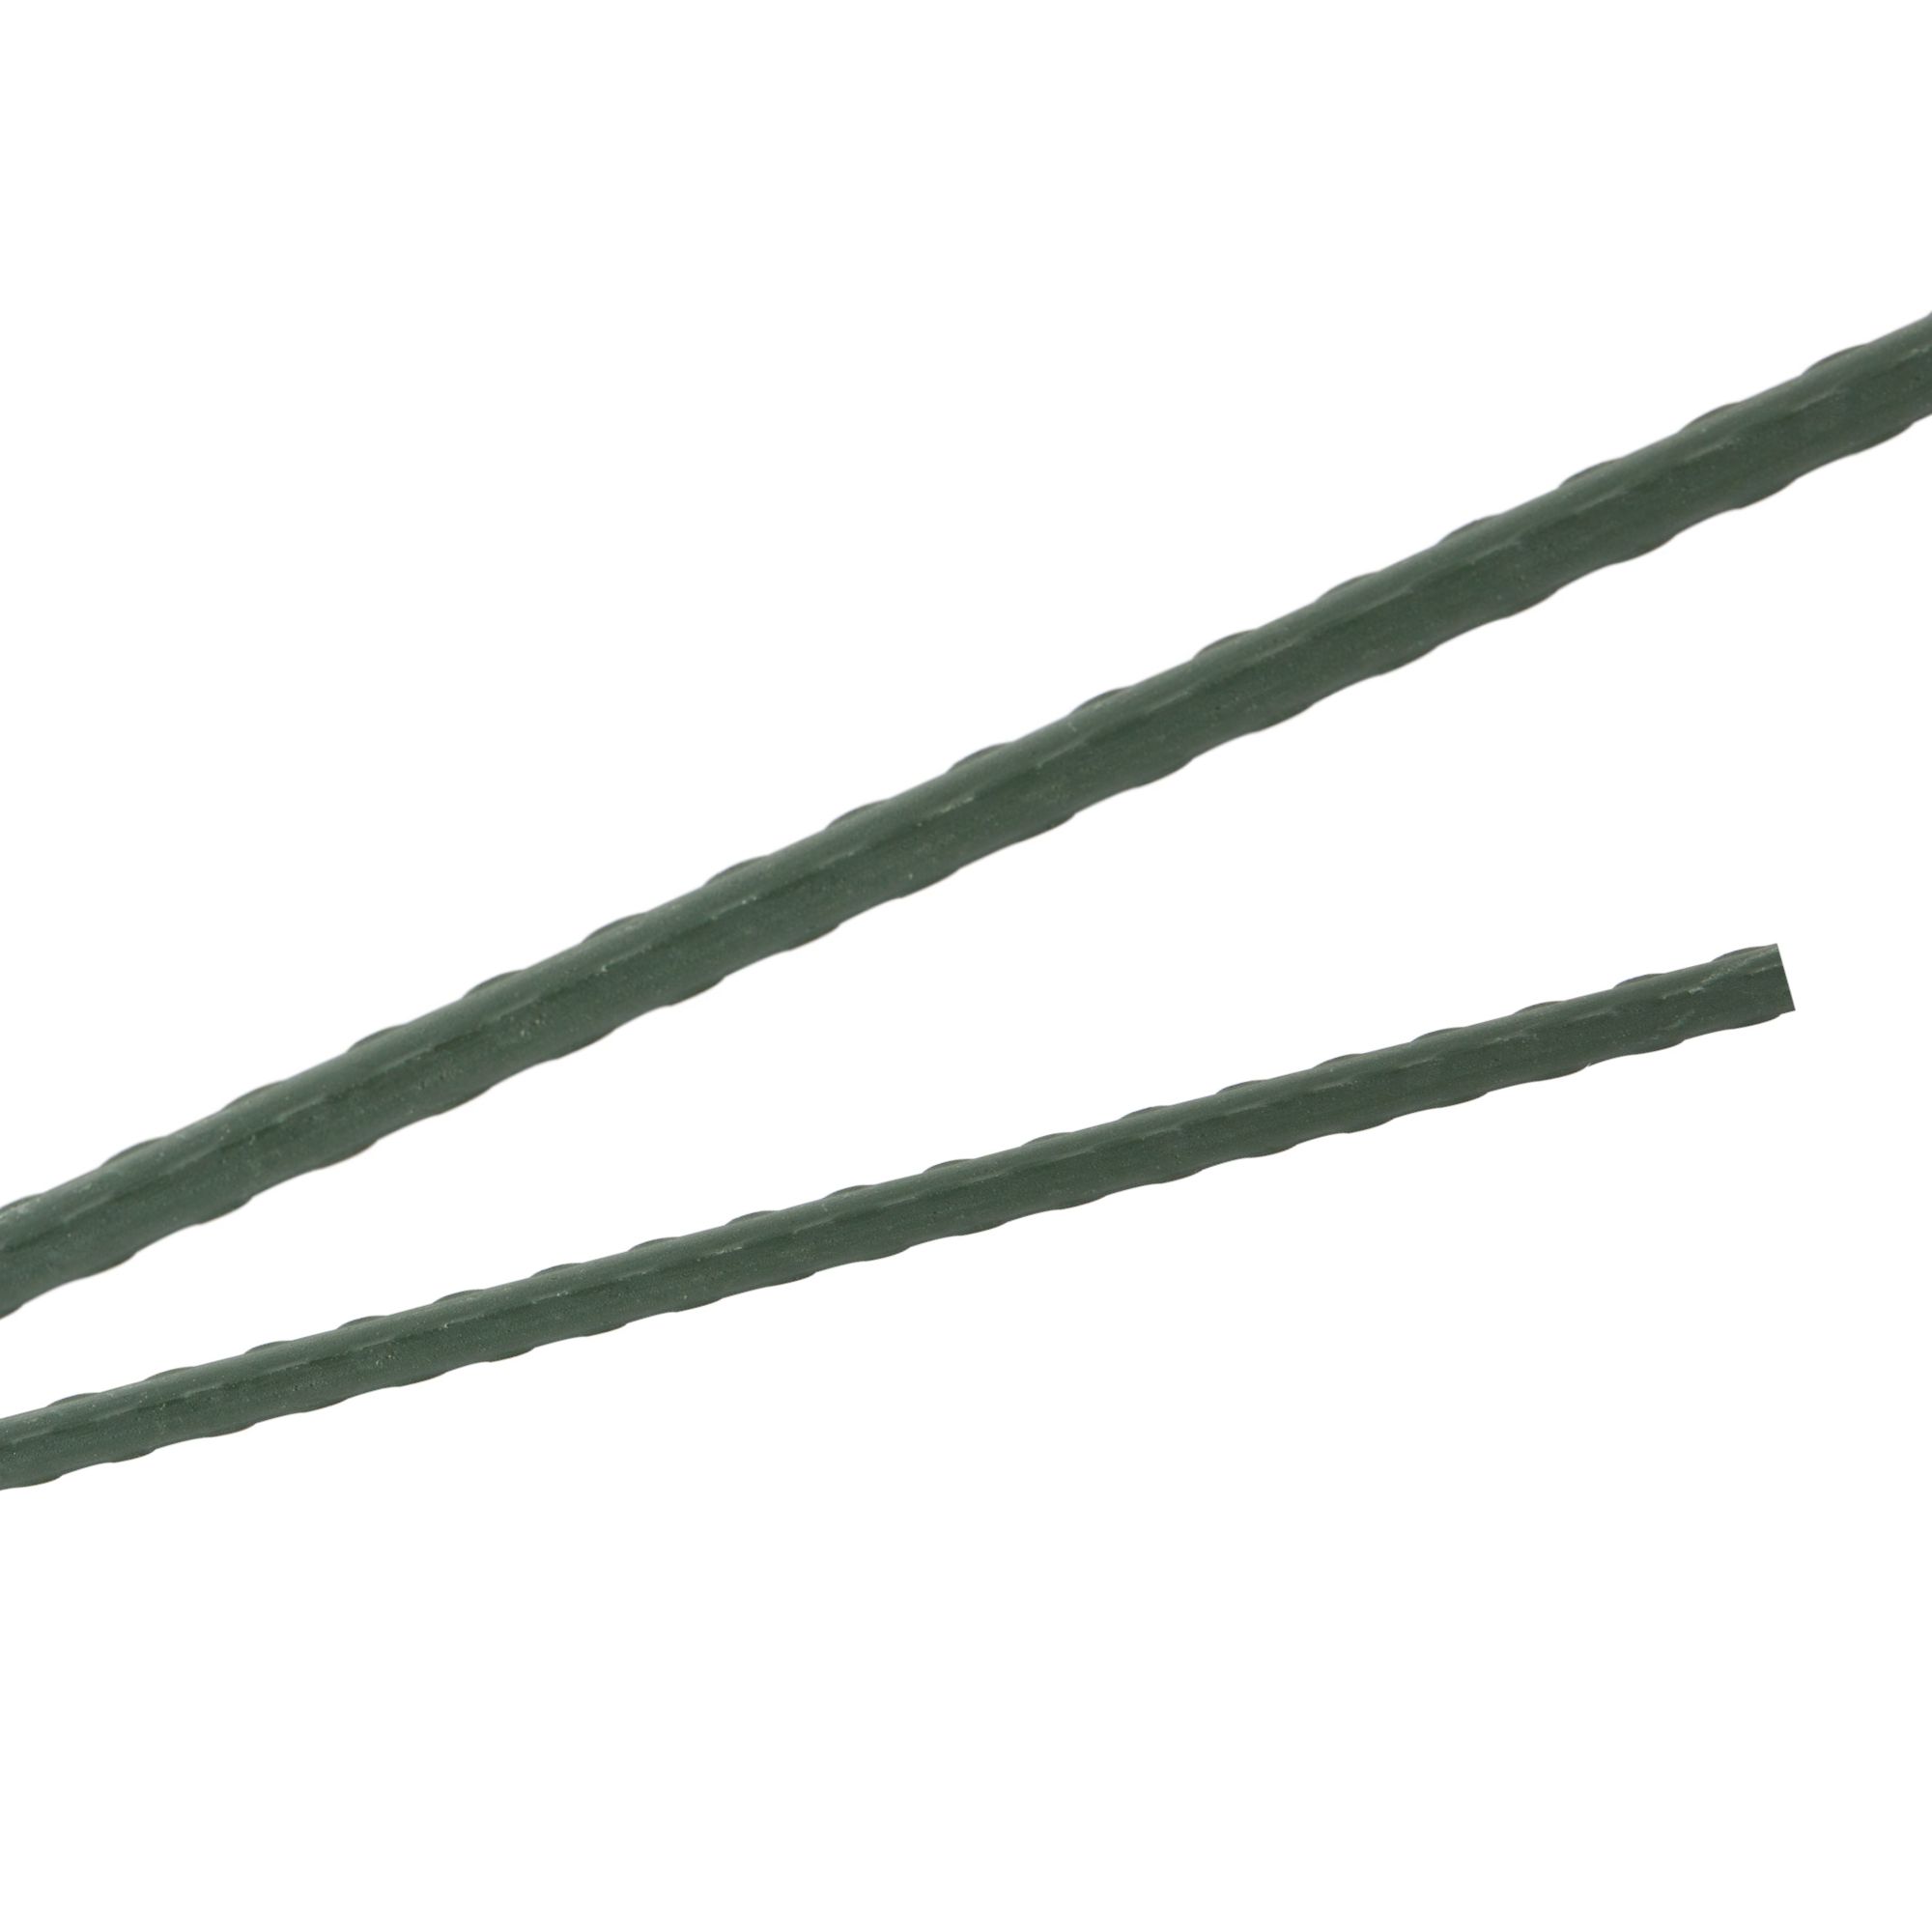 Tyč podpěrná, 8mm, 90cm, kov+PVC, zelená 0.052000 Kg GIGA Sklad20 211783 154